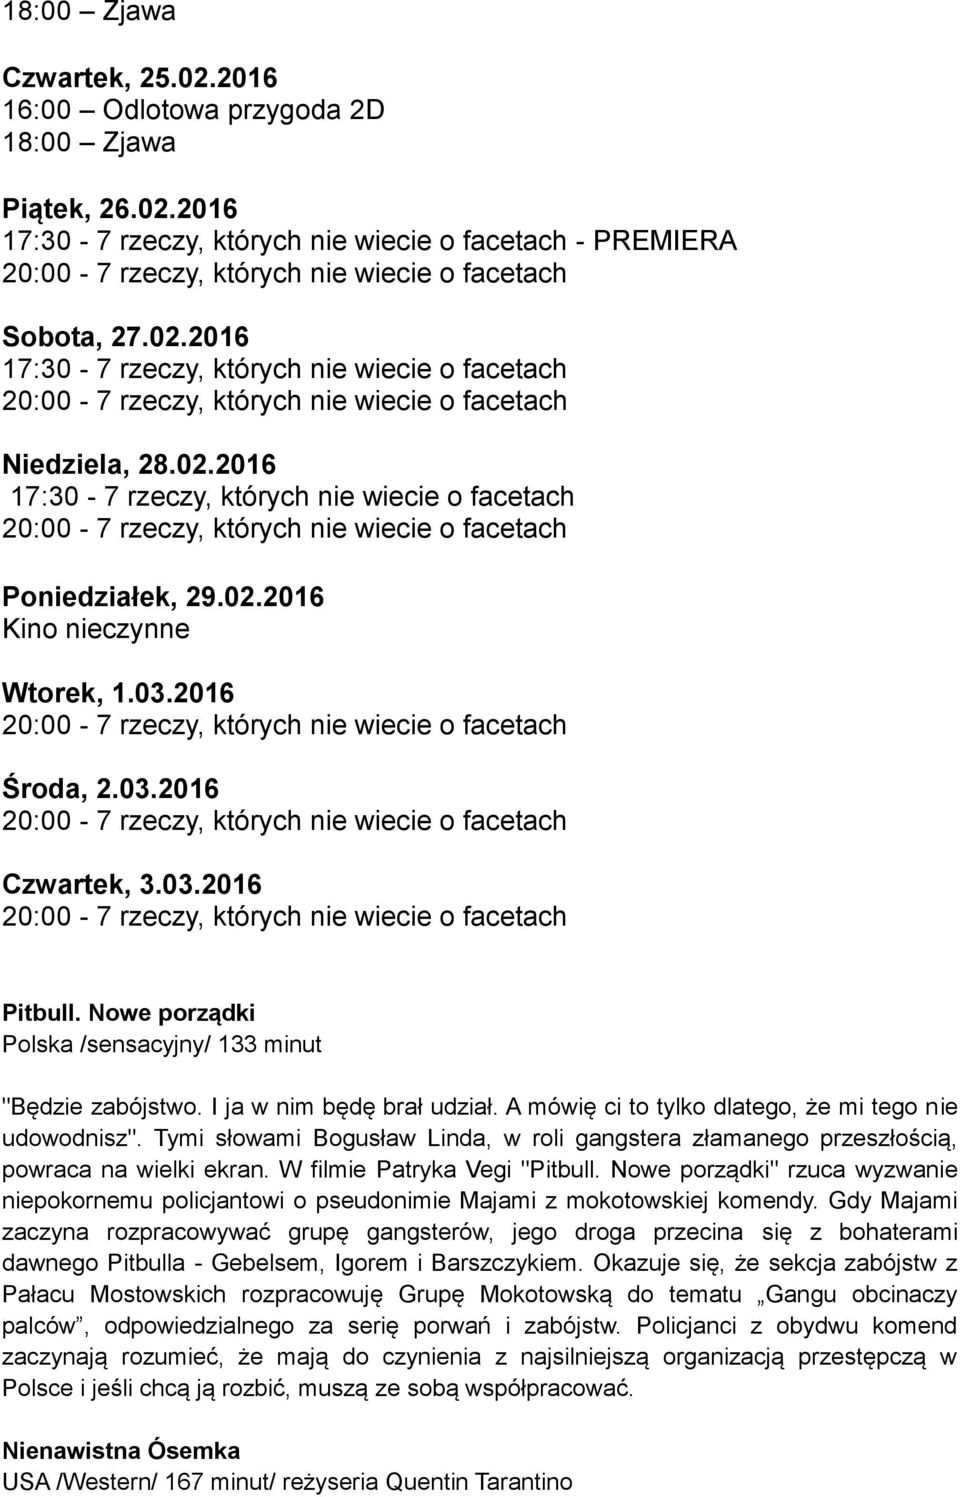 Nowe porządki Polska /sensacyjny/ 133 minut "Będzie zabójstwo. I ja w nim będę brał udział. A mówię ci to tylko dlatego, że mi tego nie udowodnisz".